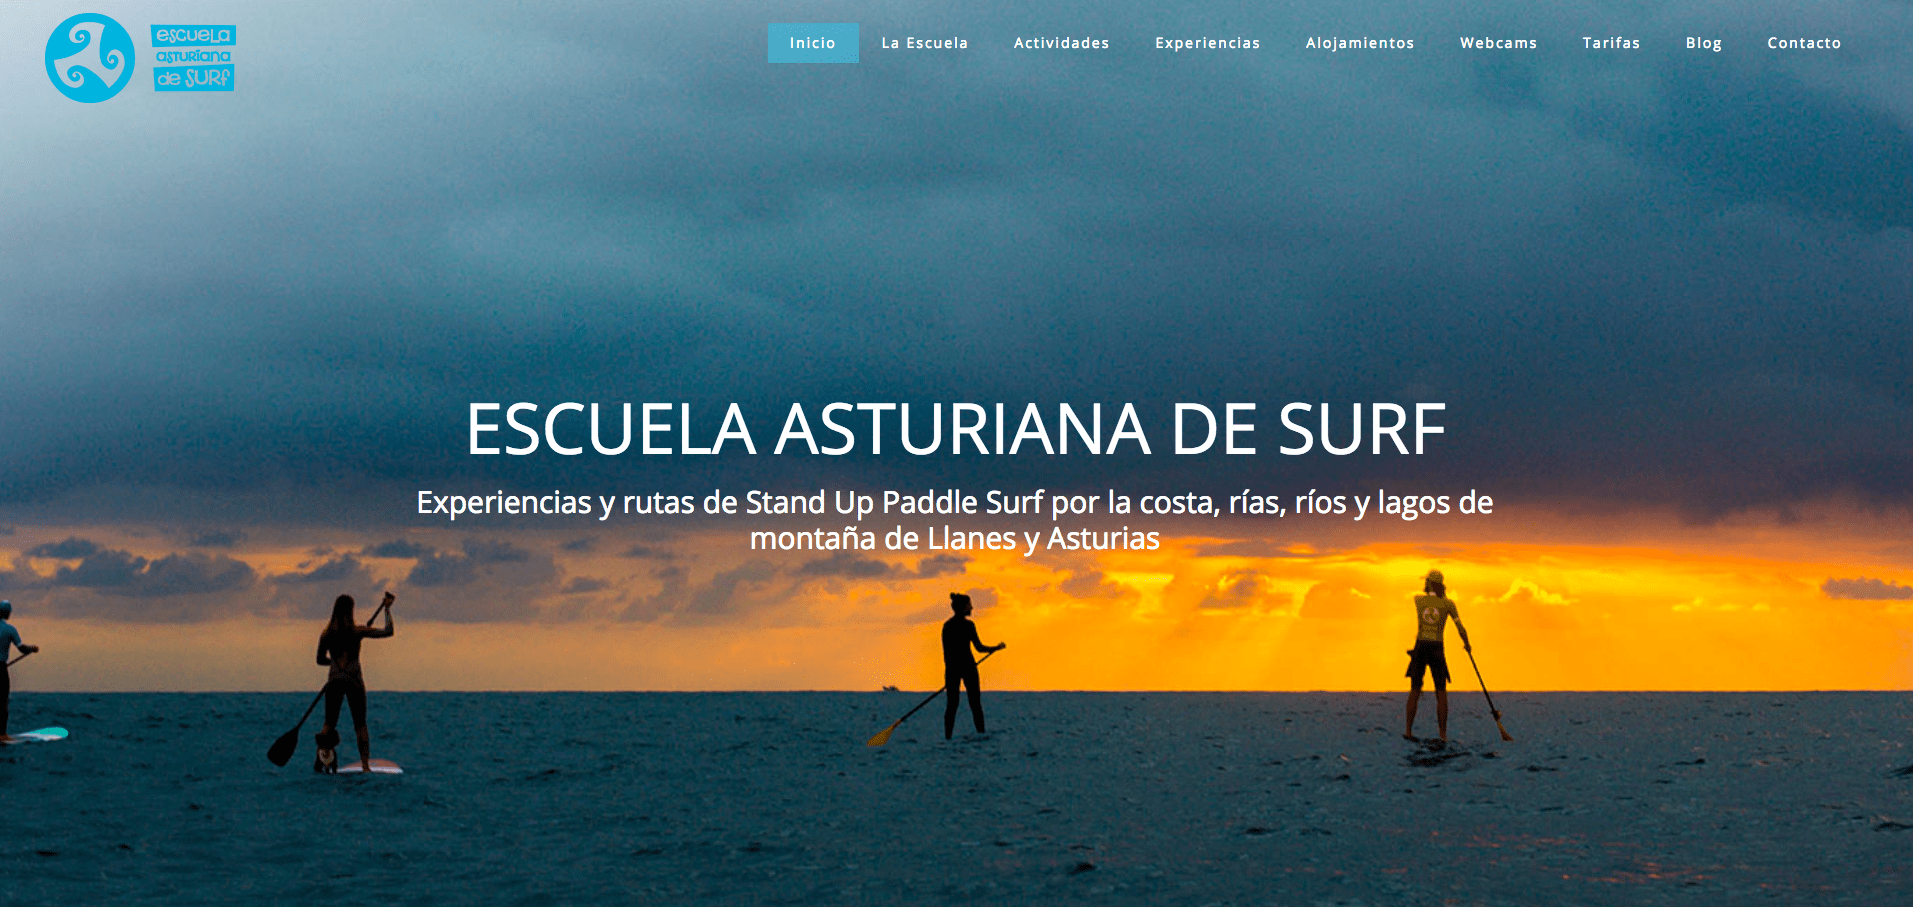 Escuela Asturiana de Surf